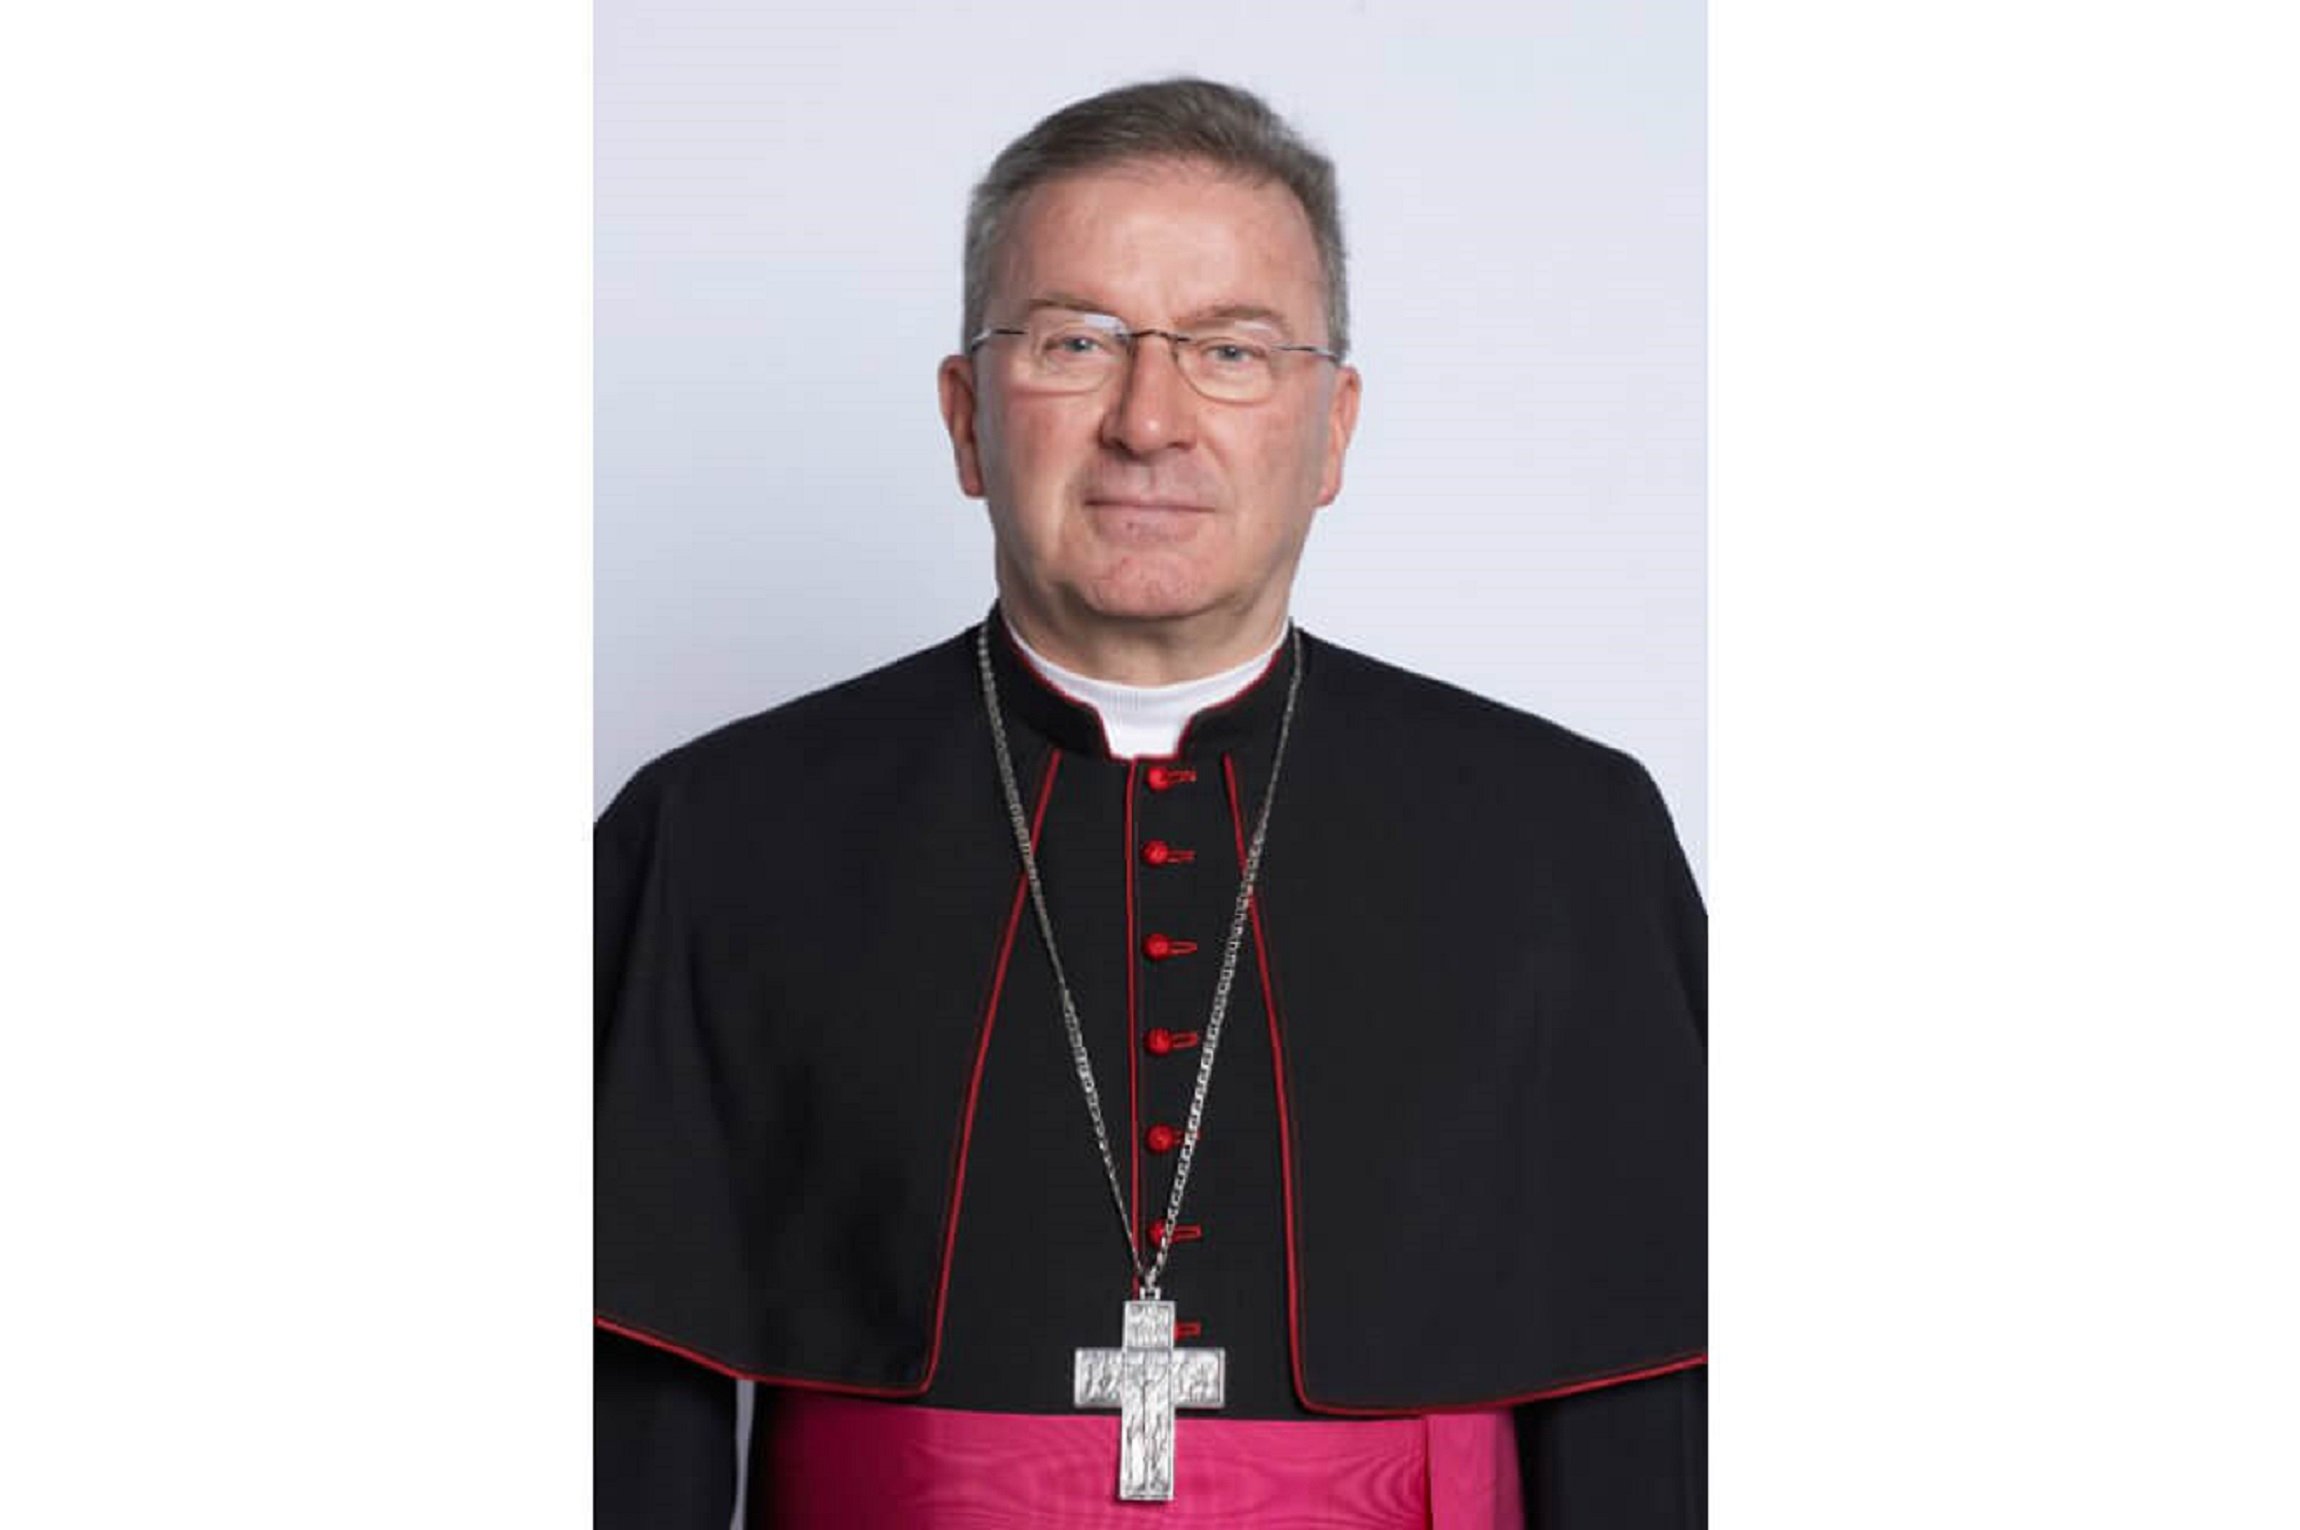 Investigan por agresión sexual el nuncio apostólico en Francia